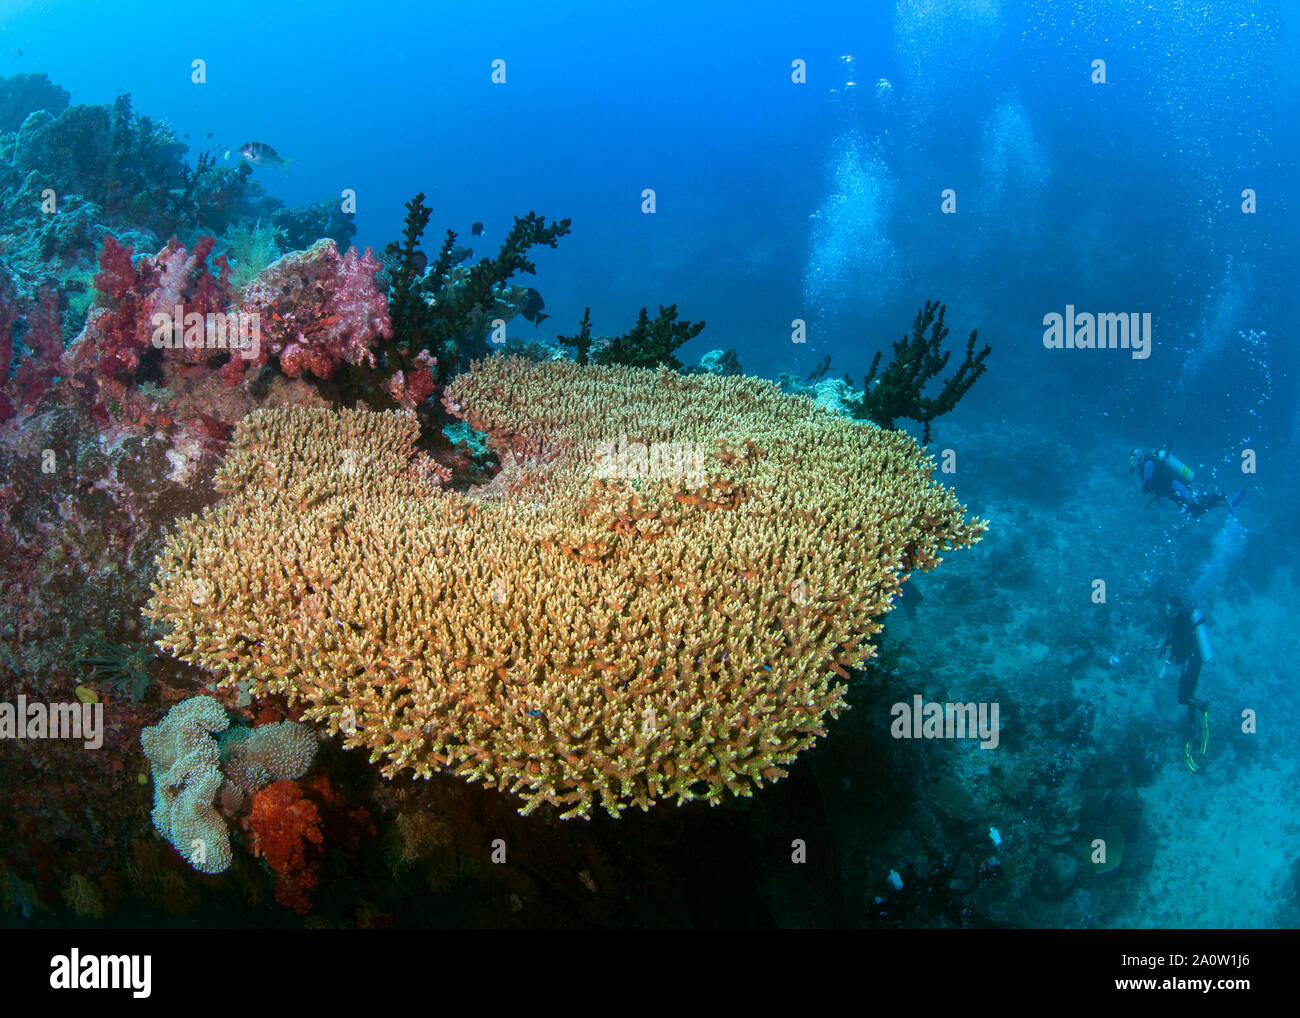 Les amateurs de plongée sous-marine (en silhouette) à la stupéfaction à grande table ininterrompue de corail, mais il y a des ordures poubelle de la mer ci-dessous. Lagon de Beqa, Fidji. Banque D'Images